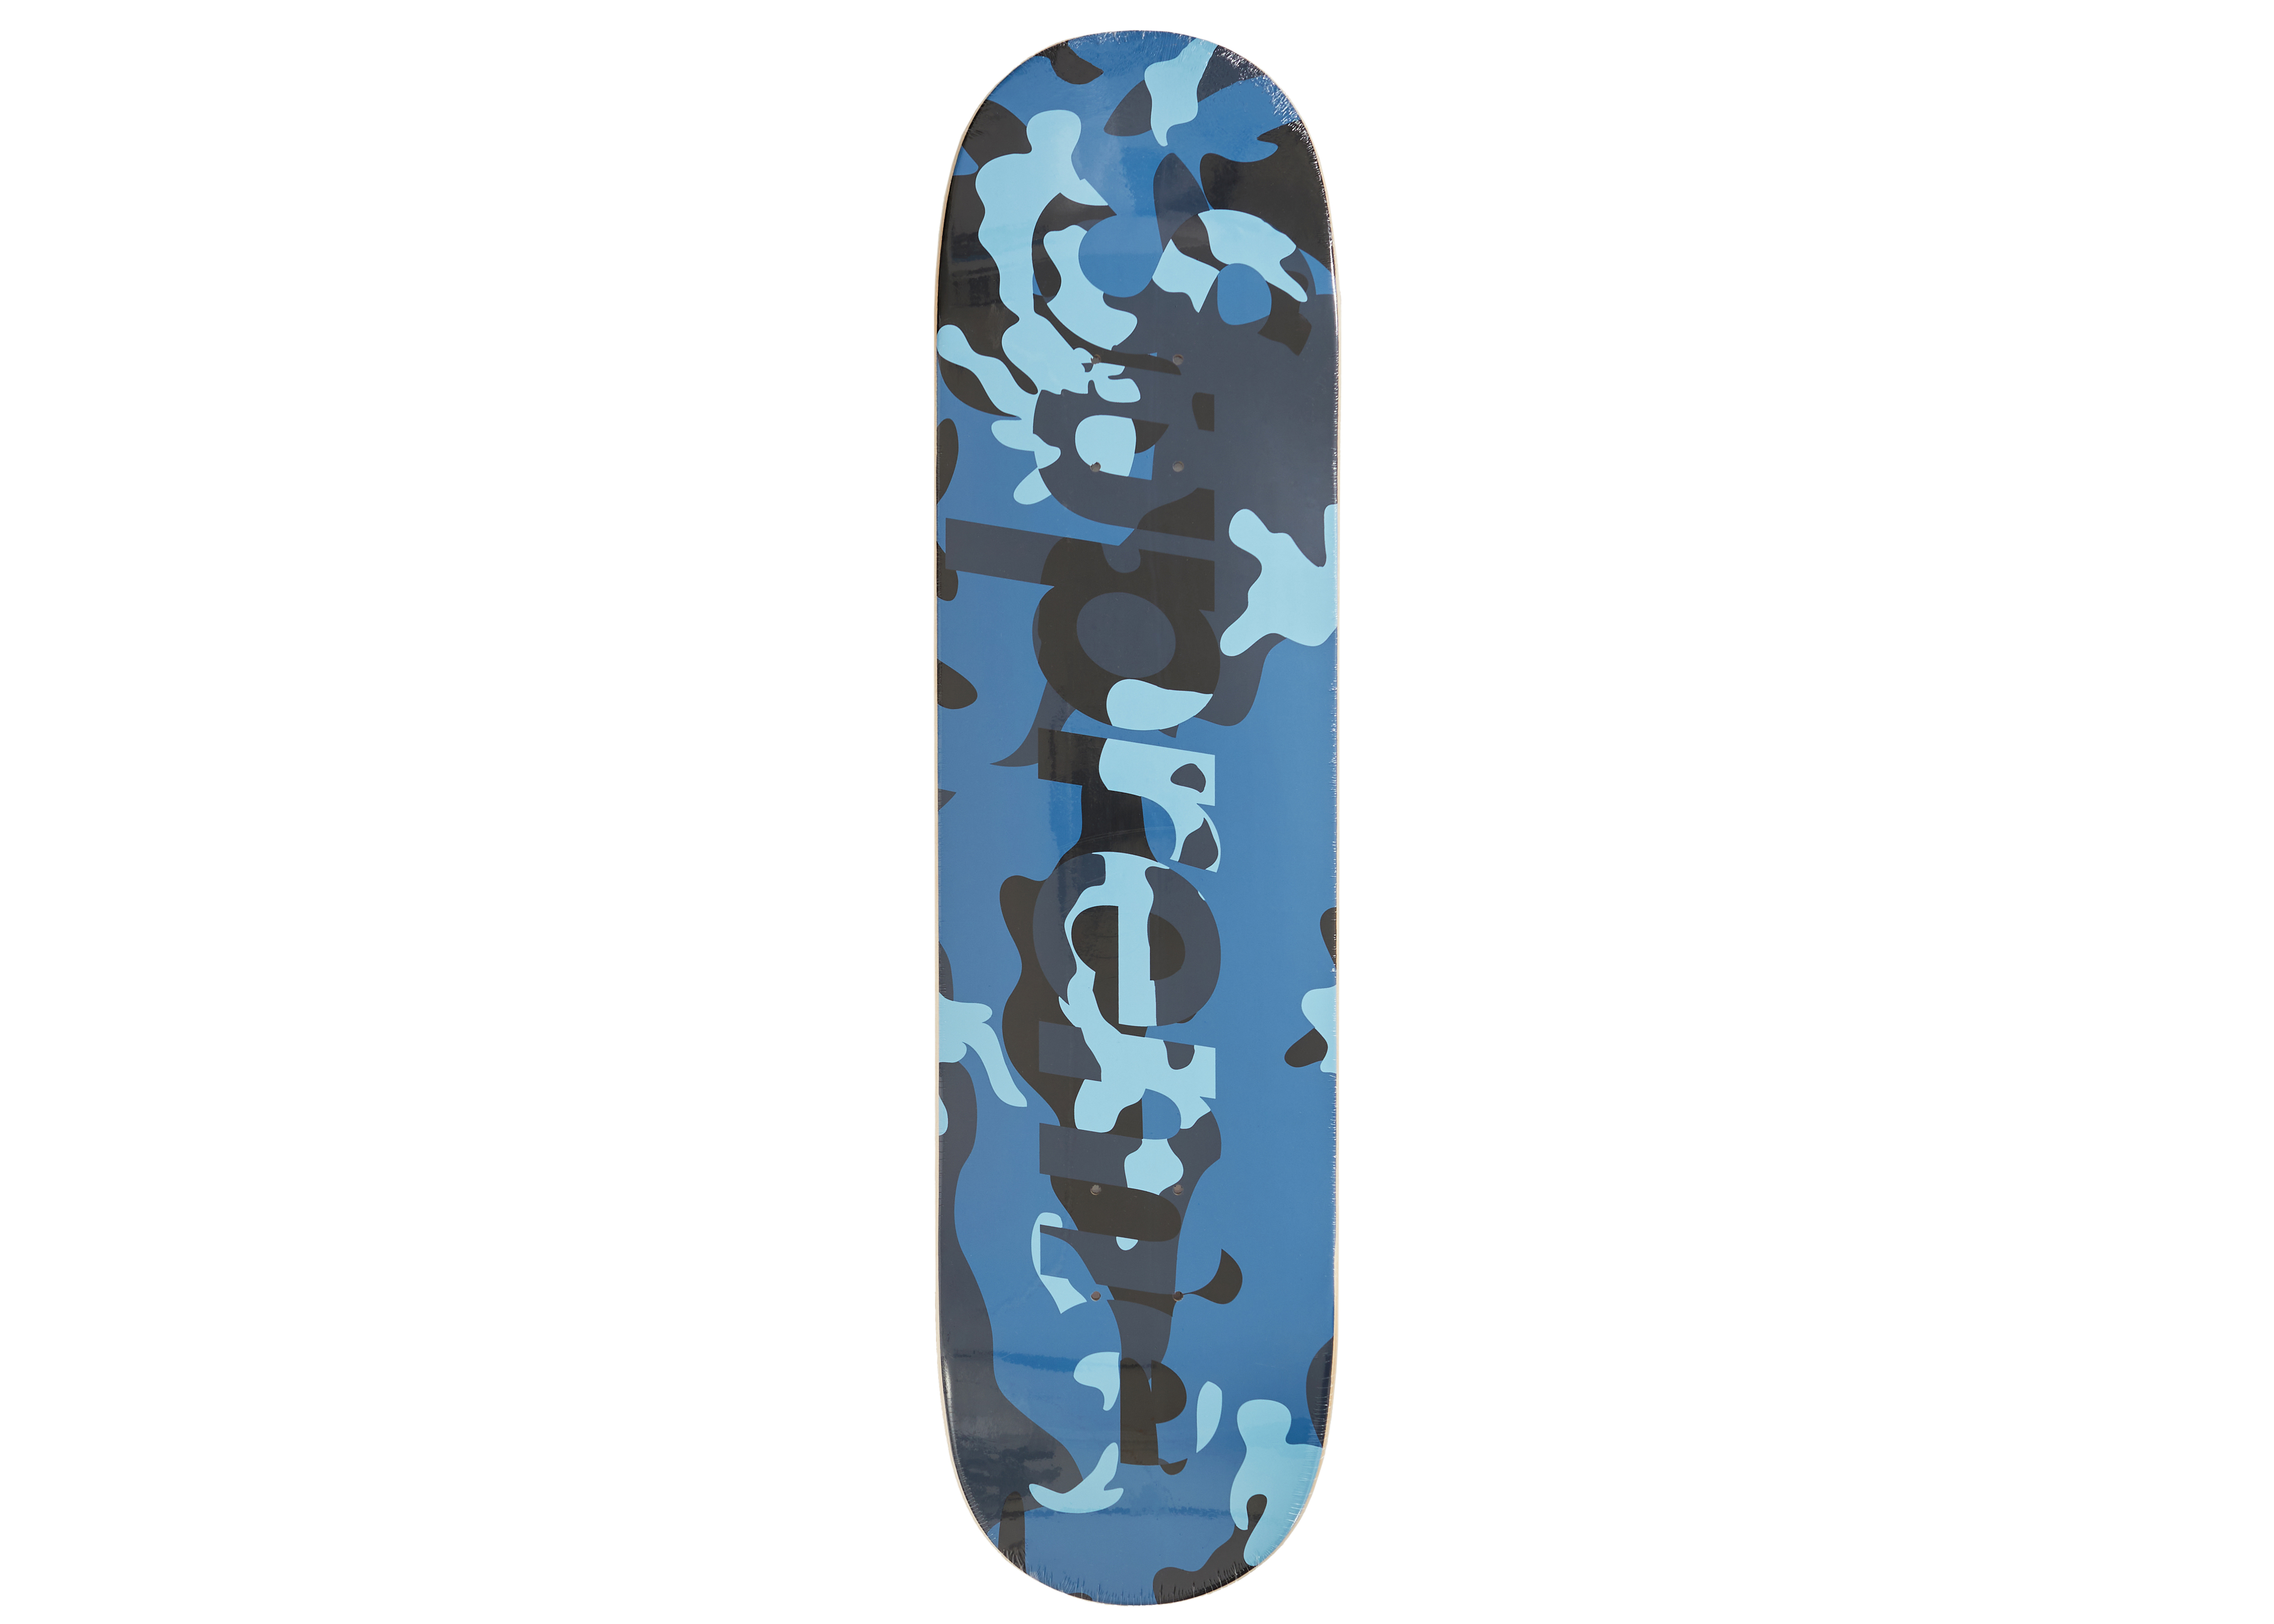 supreme camo logo skateboard デッキ